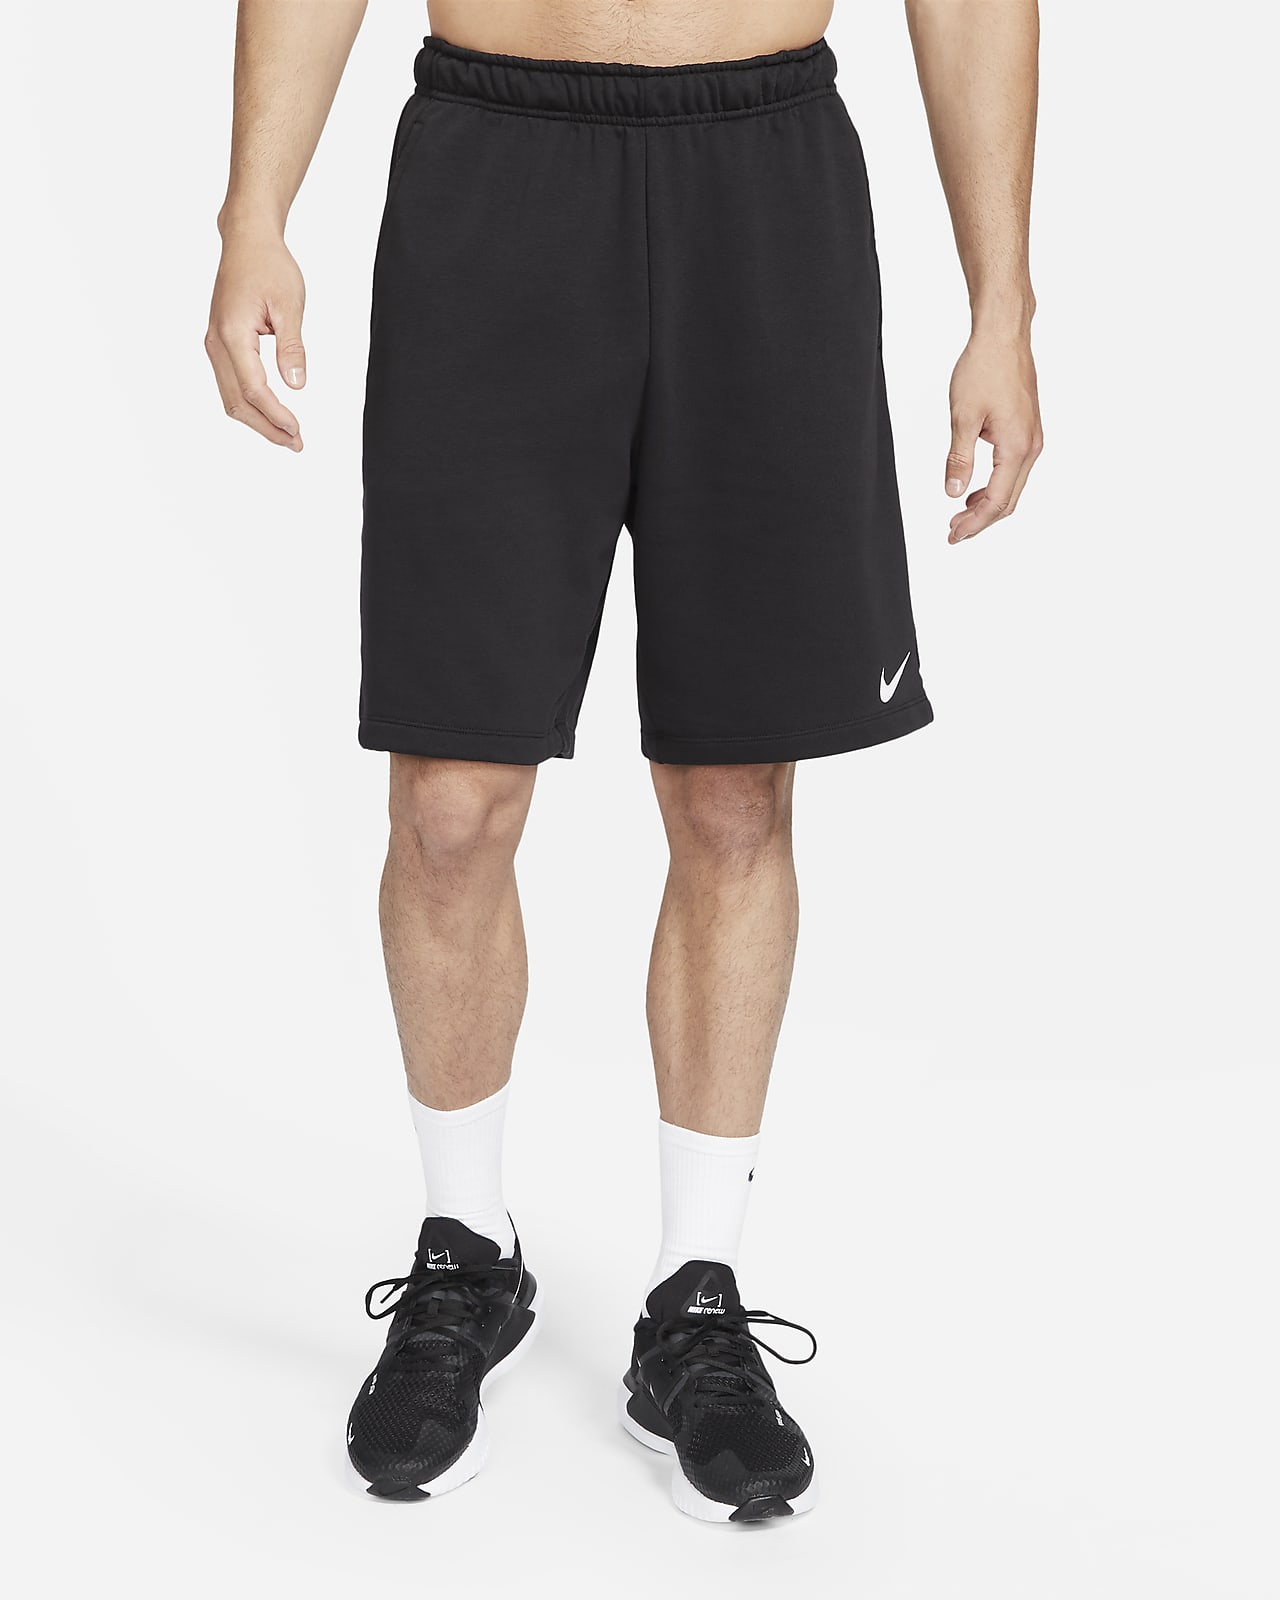 Short de fitness en tissu Fleece Dri-FIT Nike Dry pour homme